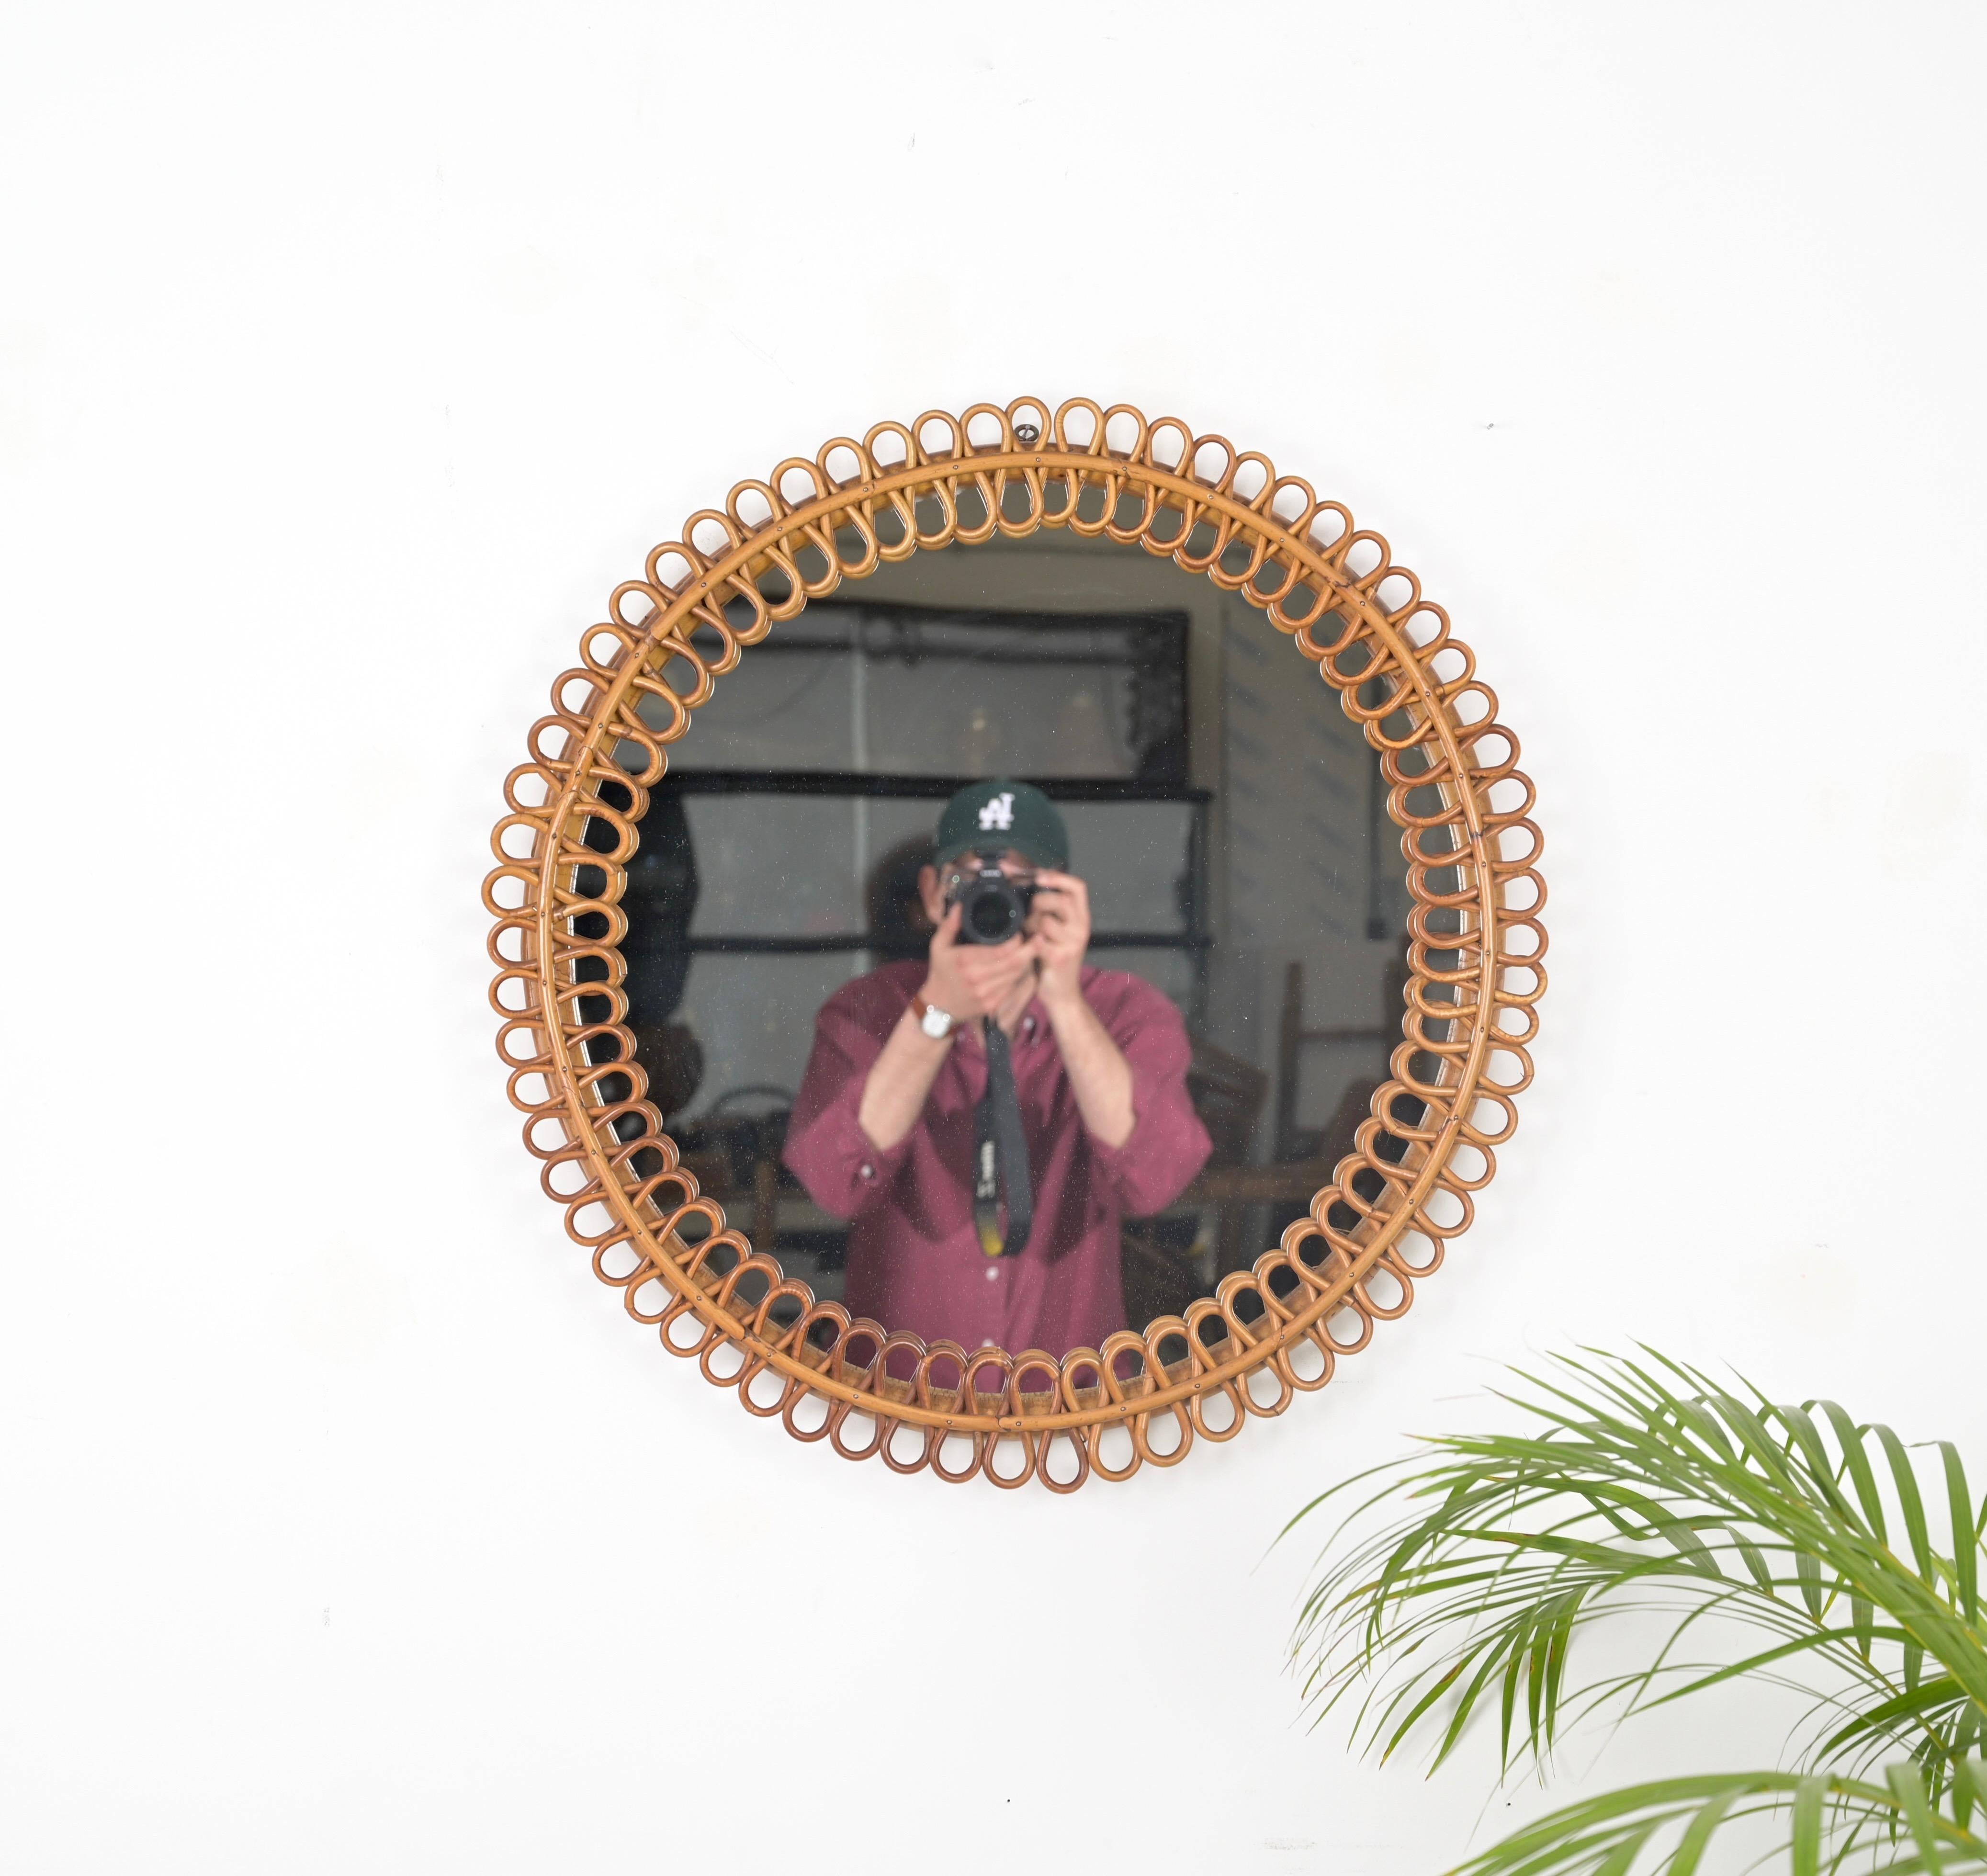 Außergewöhnlicher runder Spiegel im französischen Riviera-Stil, vollständig aus gebogenem Rattan und Bambus gefertigt. Dieser spektakuläre und einzigartige Spiegel wurde von dem Meister Franco Albini entworfen und in den 1960er Jahren in Italien